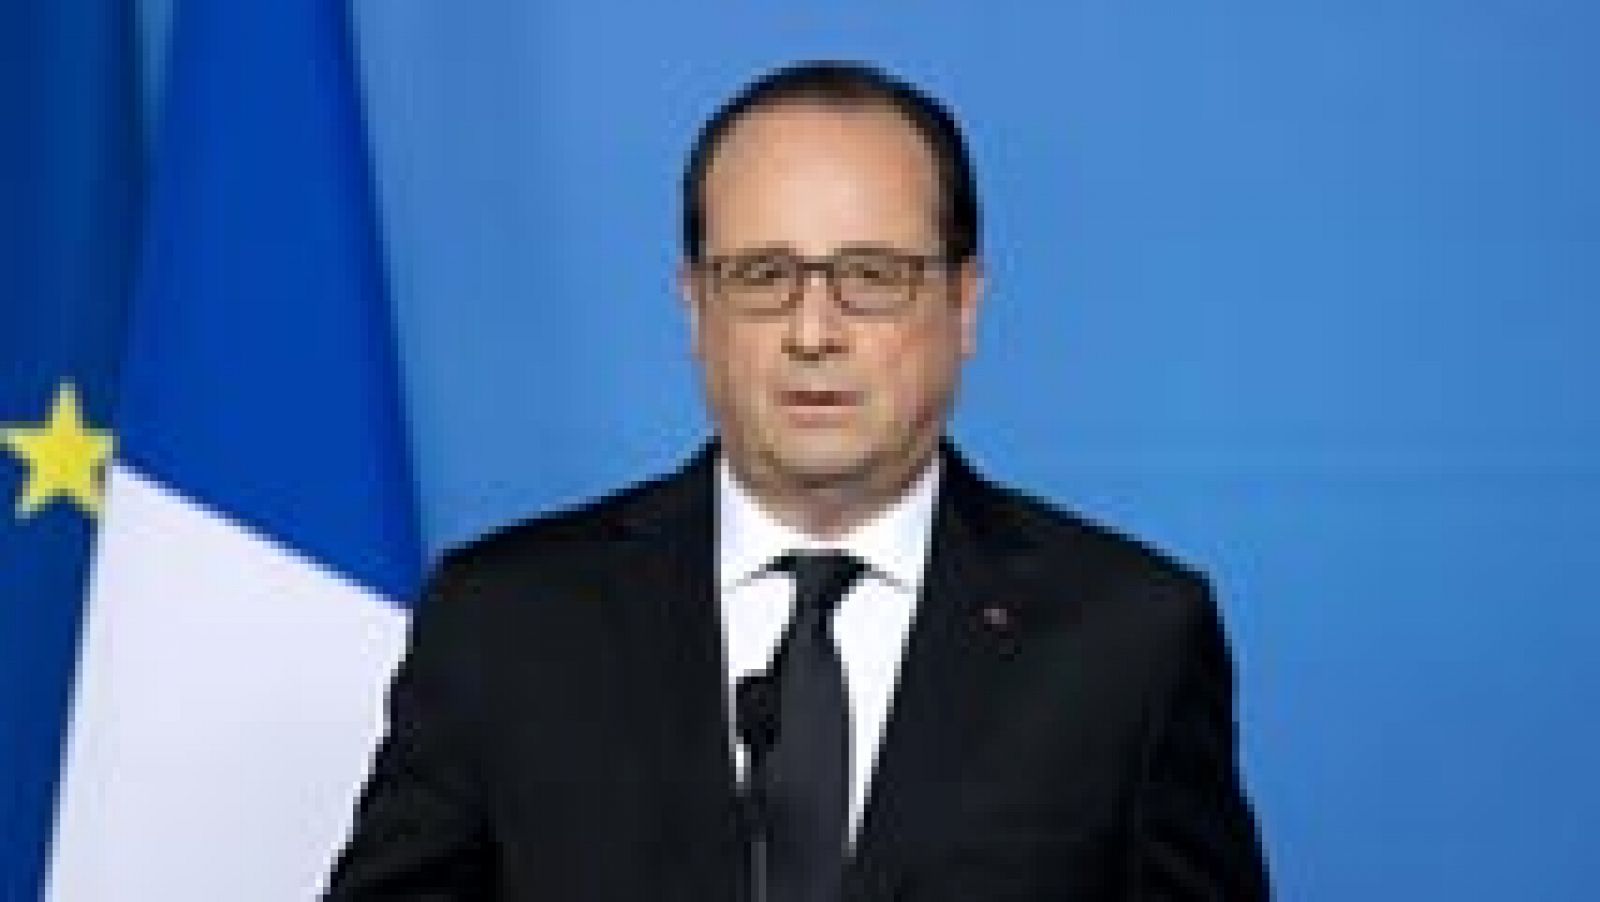 Hollande, tras el atentado de Lyon: "No cederemos jamás ante el miedo" 